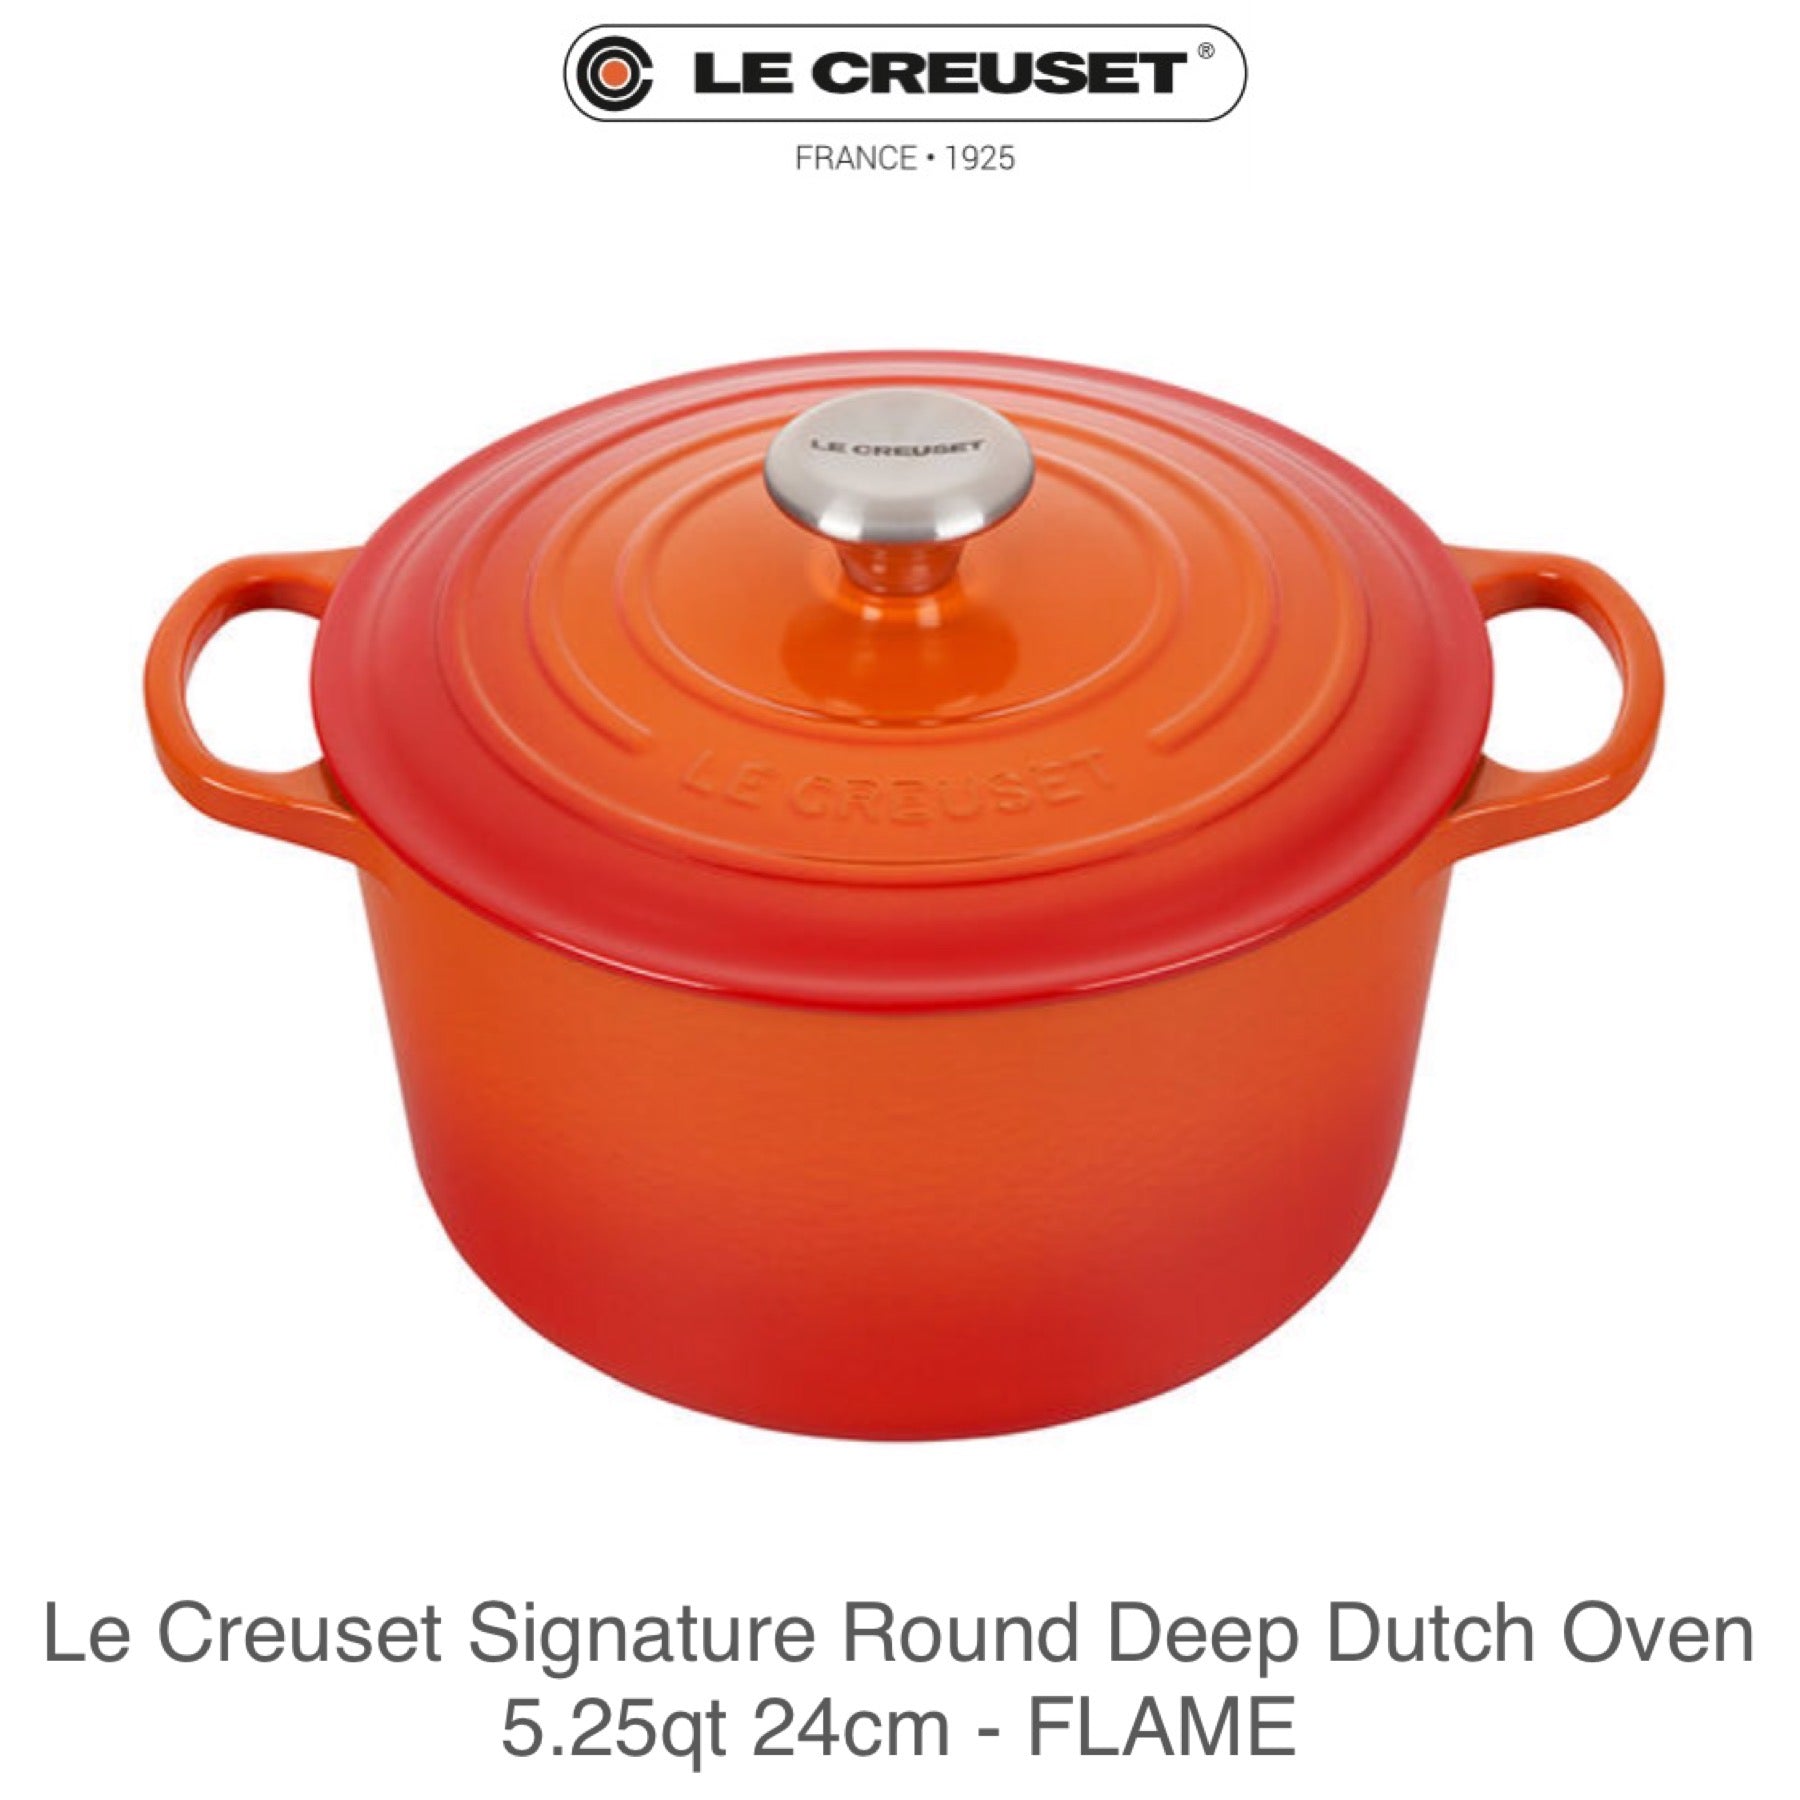 Le Creuset Signature Enameled Cast Iron Deep Dutch Oven, 5.25QT on